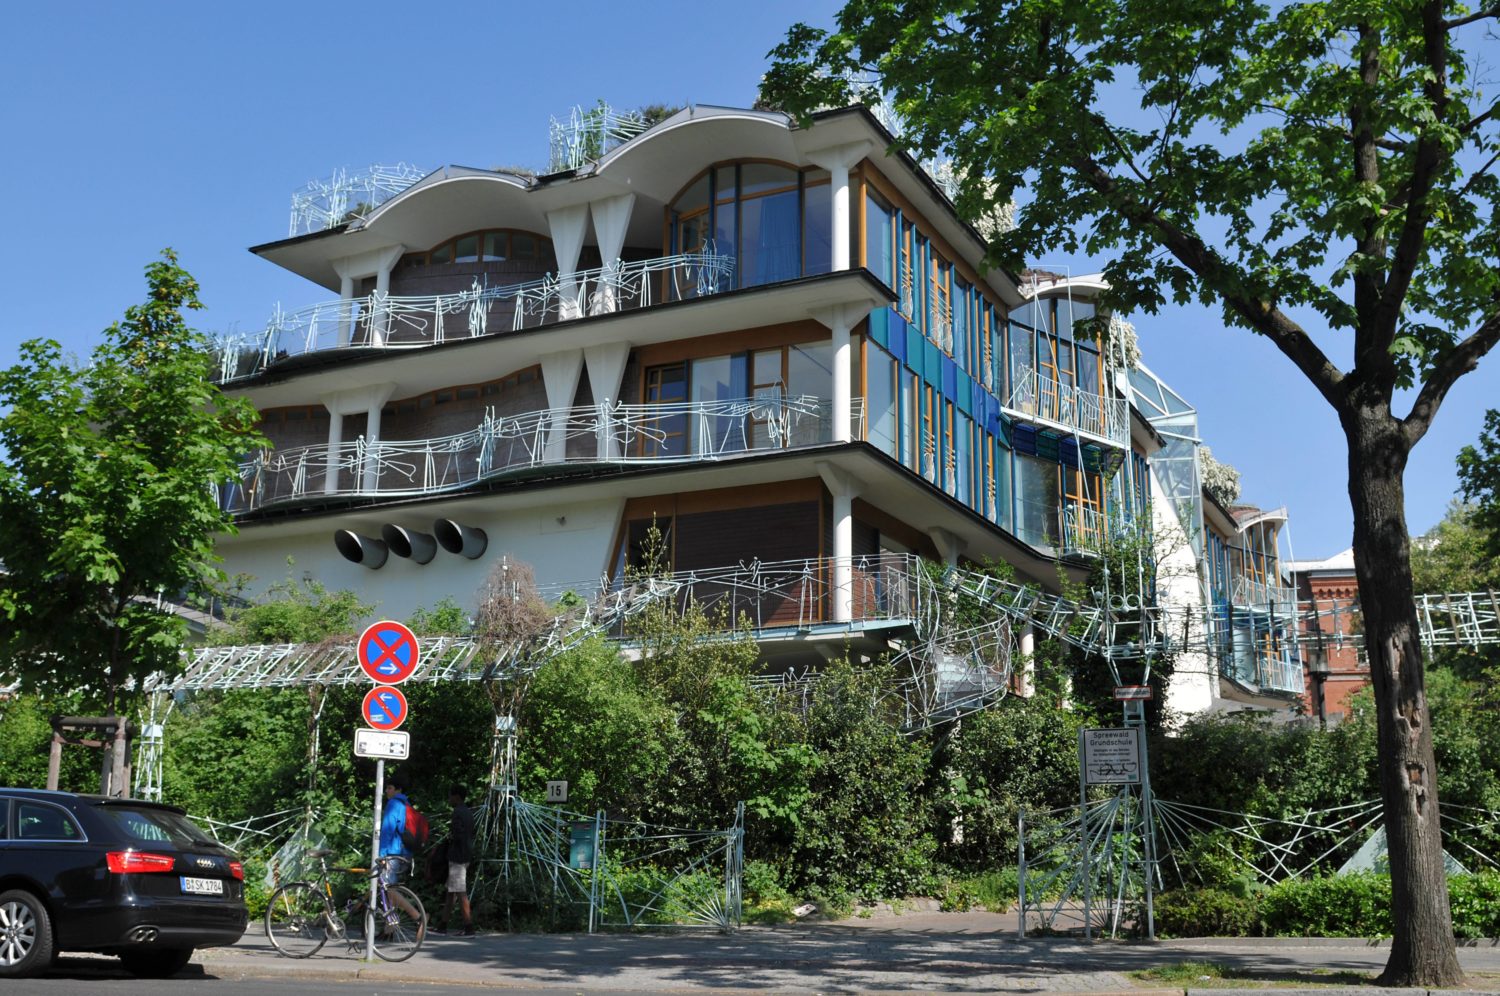 Architektur Berlin Man kann die Spreewaldgrundschule lieben oder hassen, zumindest ist der Baller-Bau unbestreitbar auffällig. Foto: Imago/Schöning